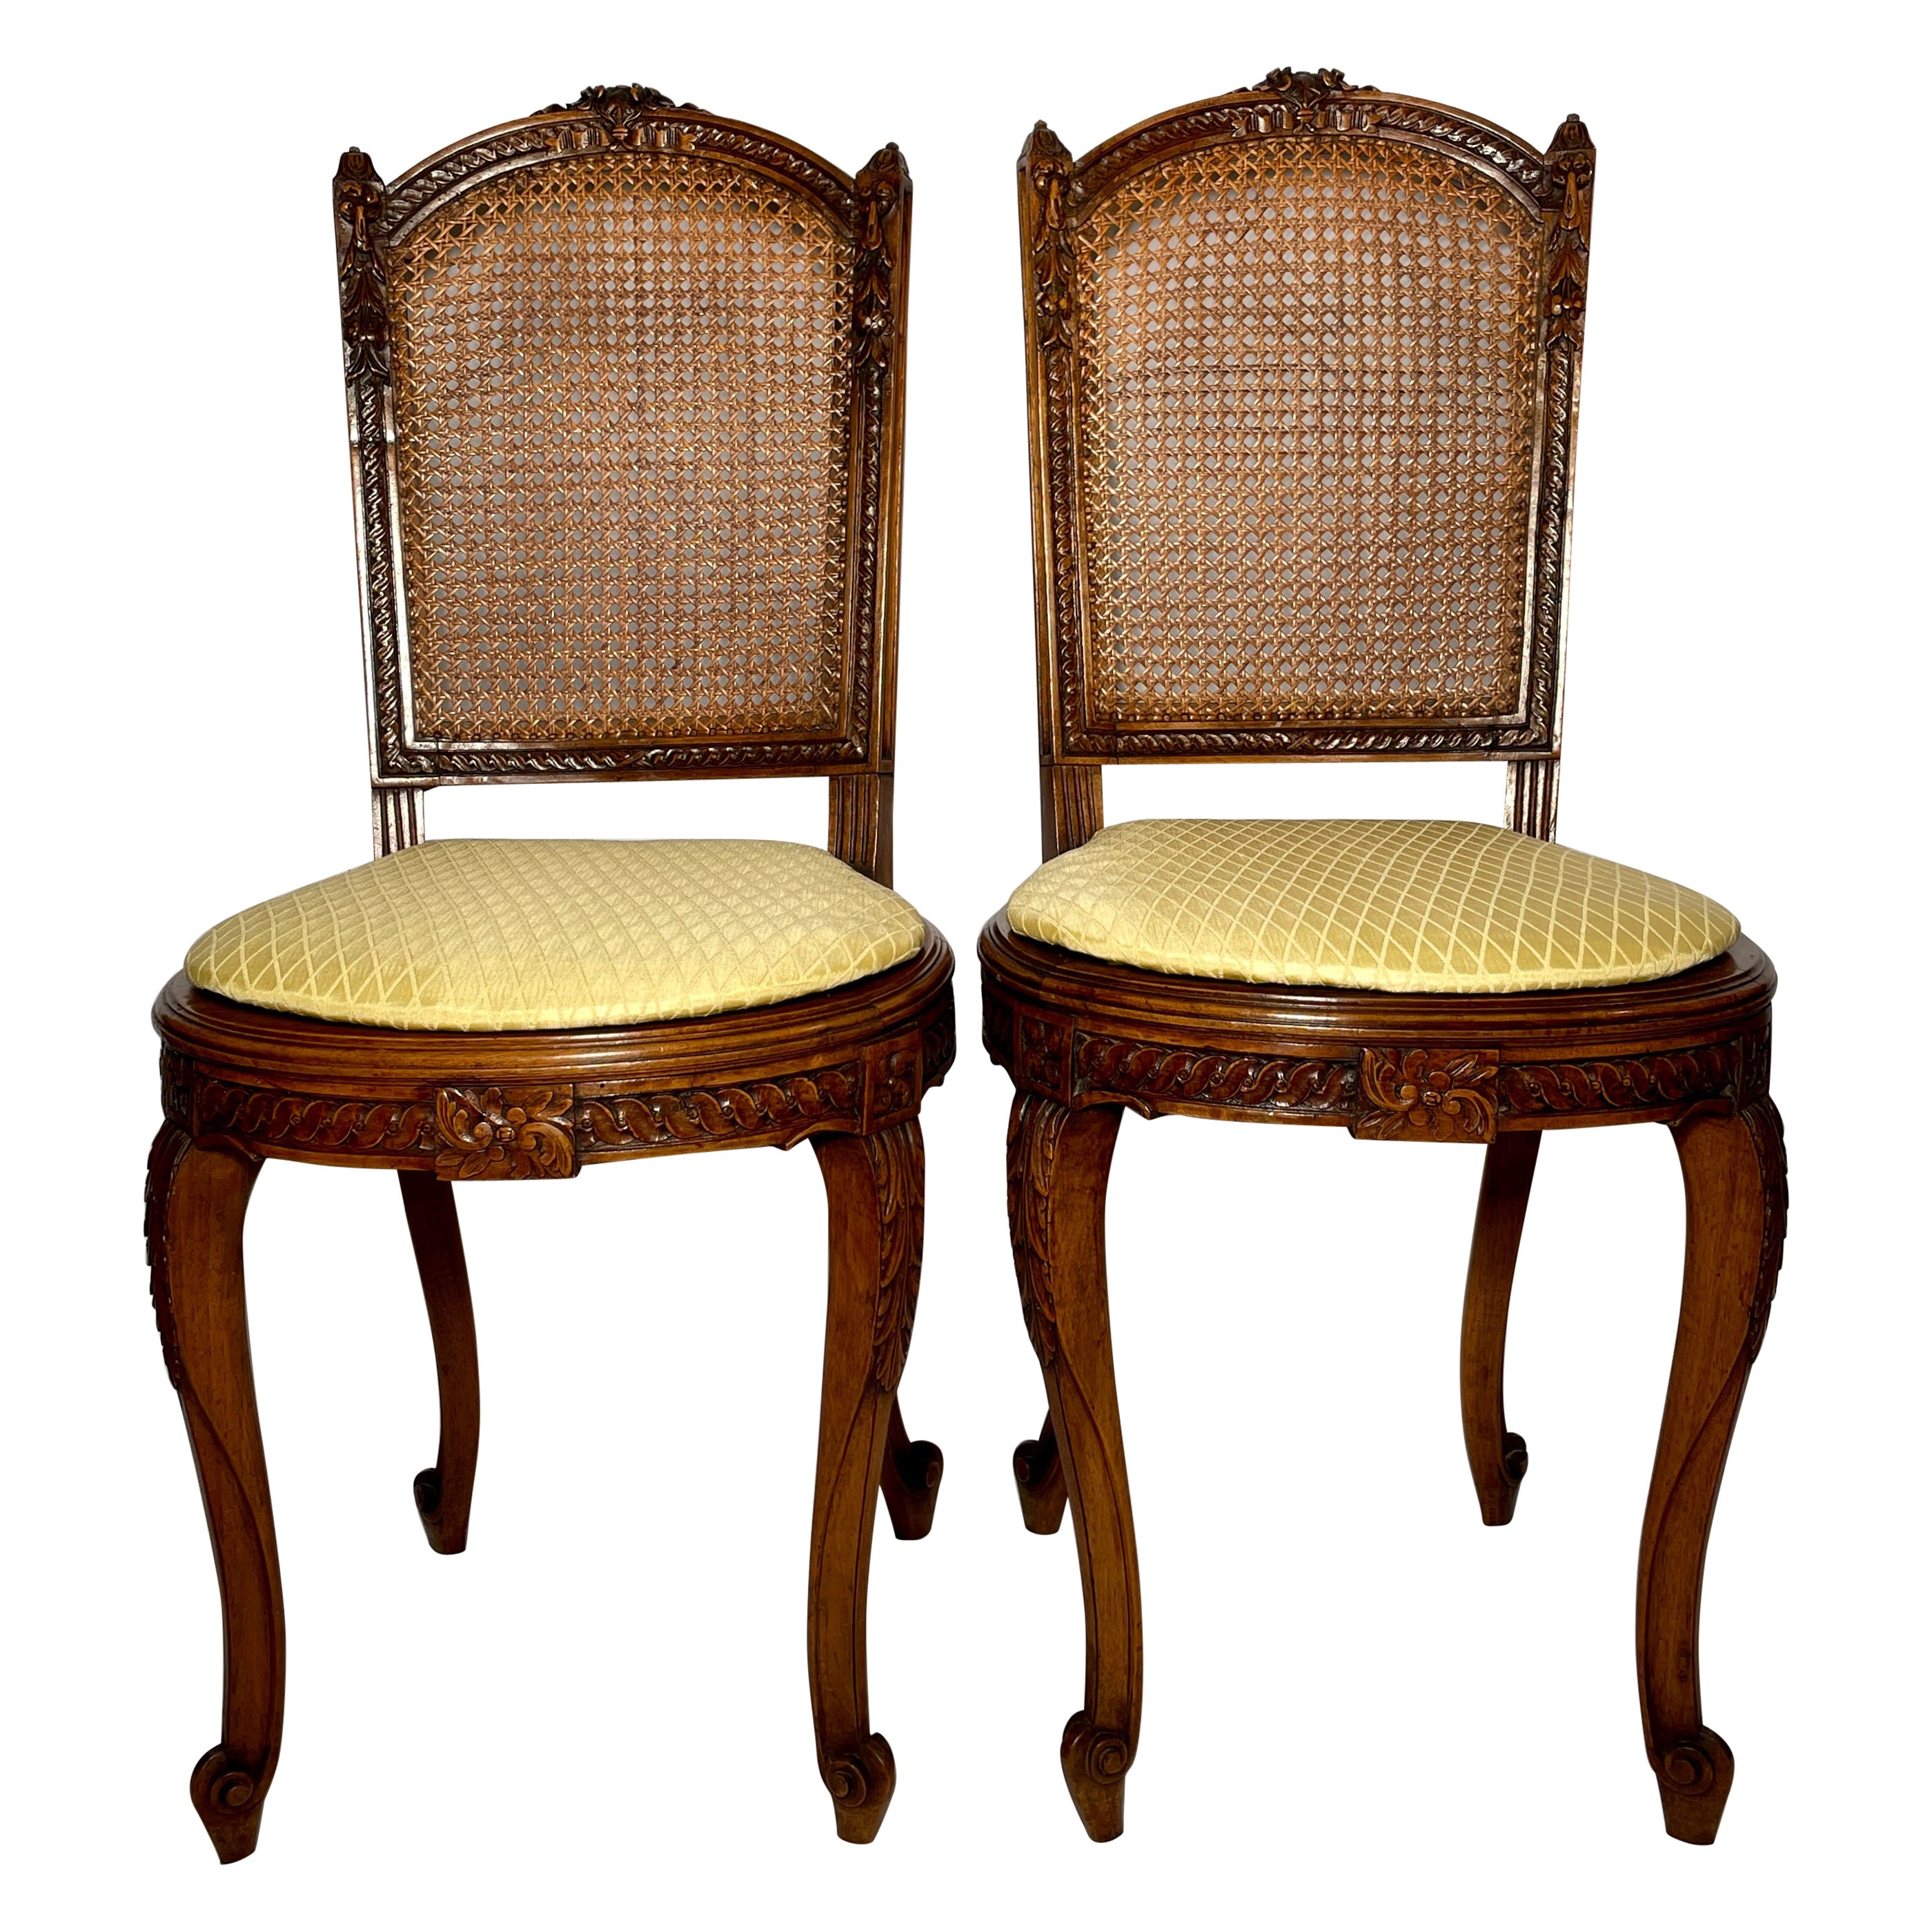 Paar antike französische Beistellstühle aus Nussbaumholz mit Rohrrückenlehne, um 1880.